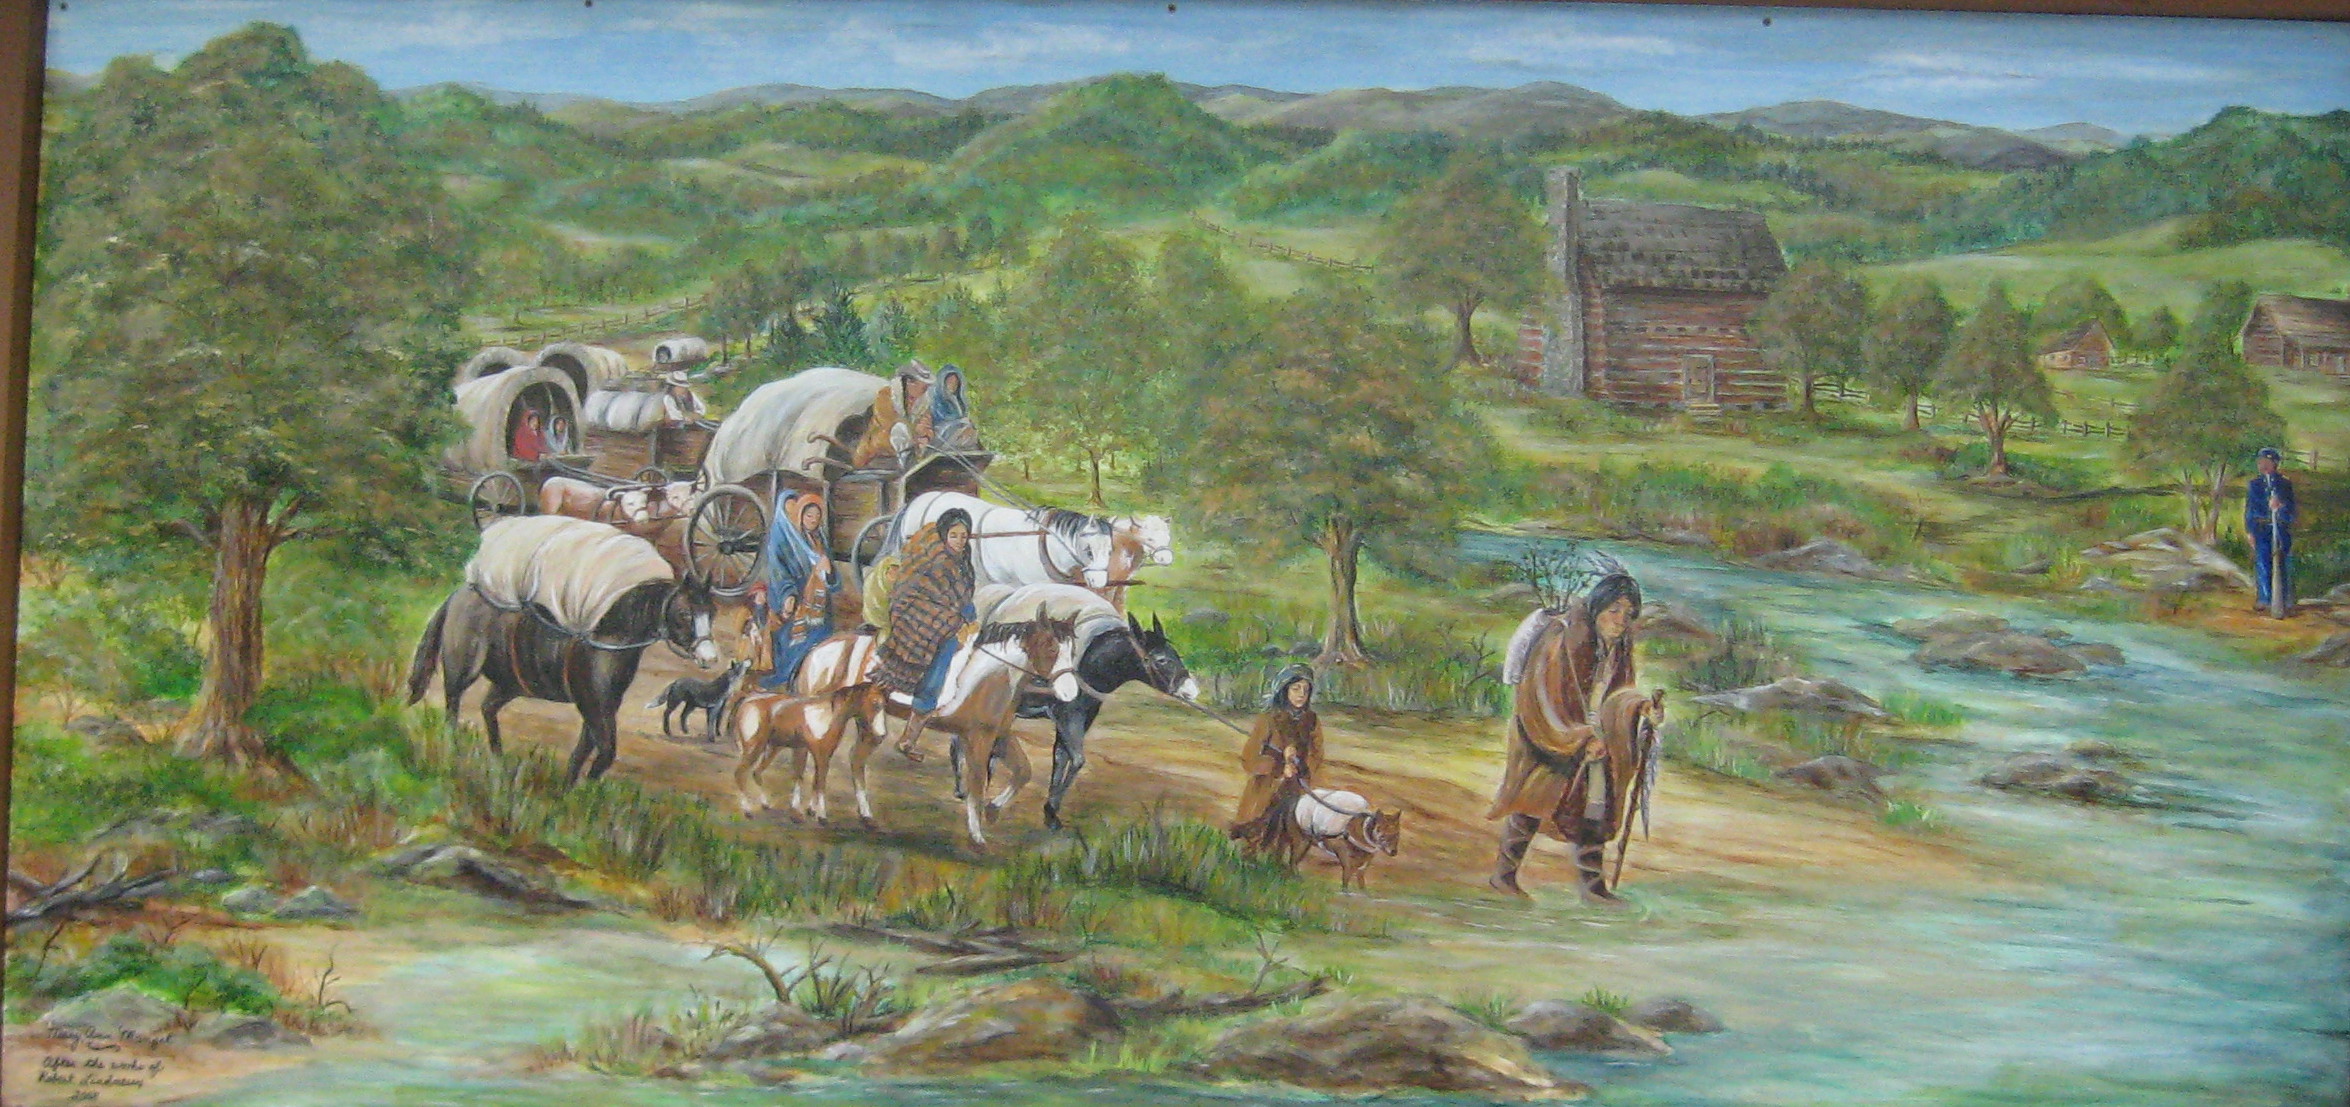 Resultado de imagem para cherokee indians history